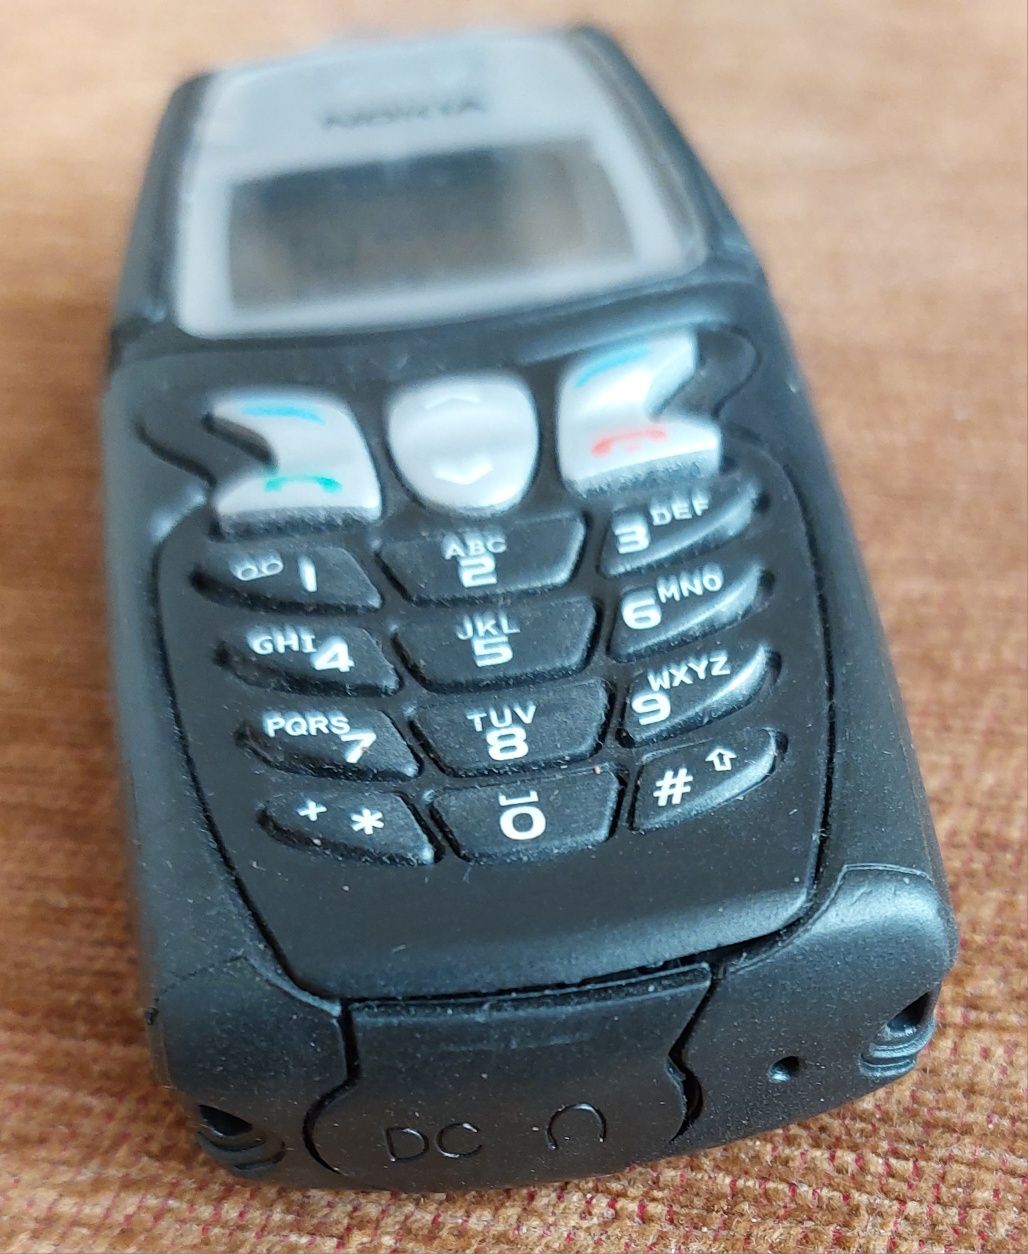 Раритетный телефон Nokia 5210 (Финляндия)